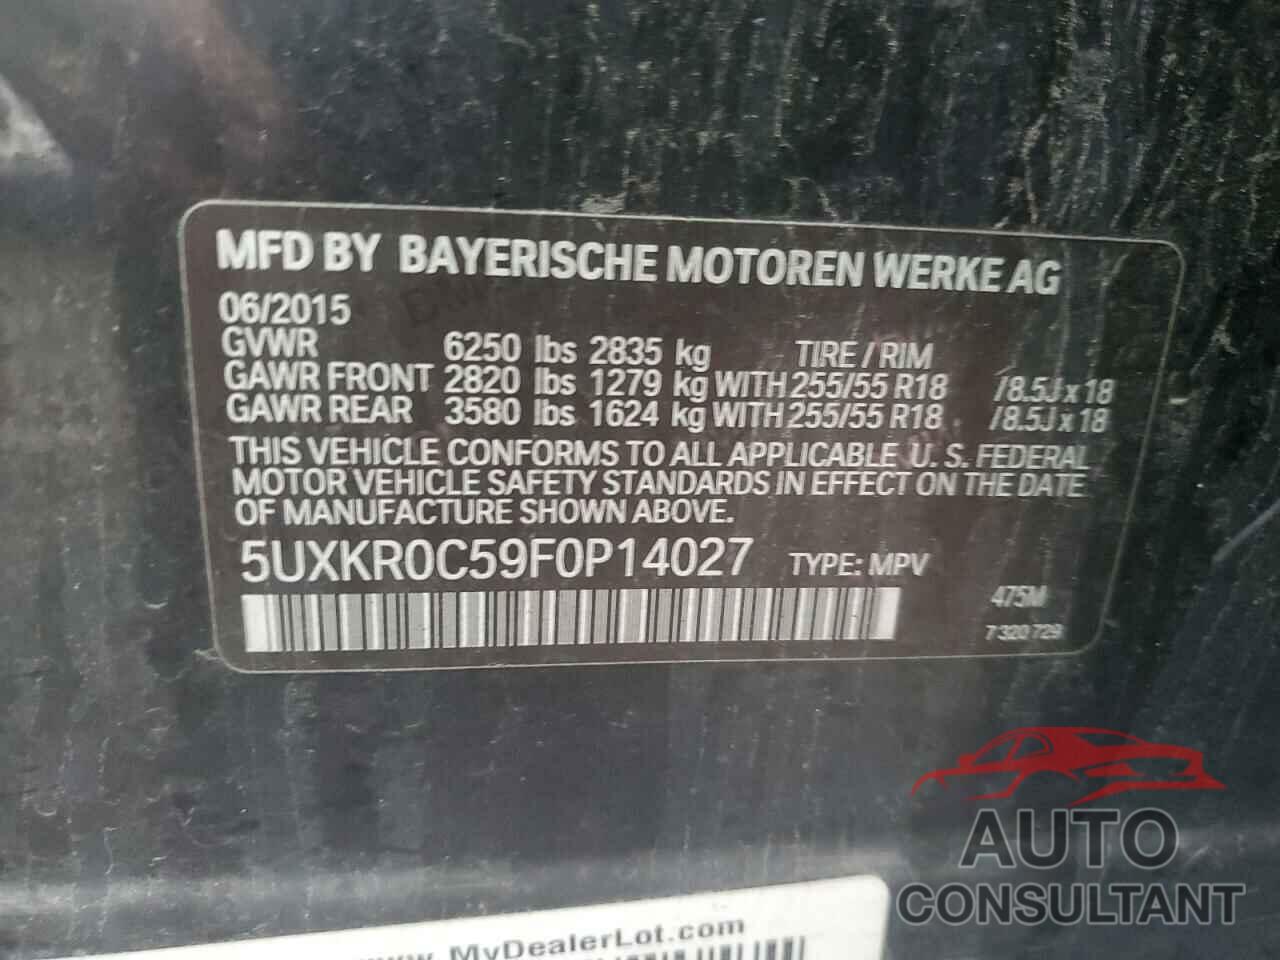 BMW X5 2015 - 5UXKR0C59F0P14027